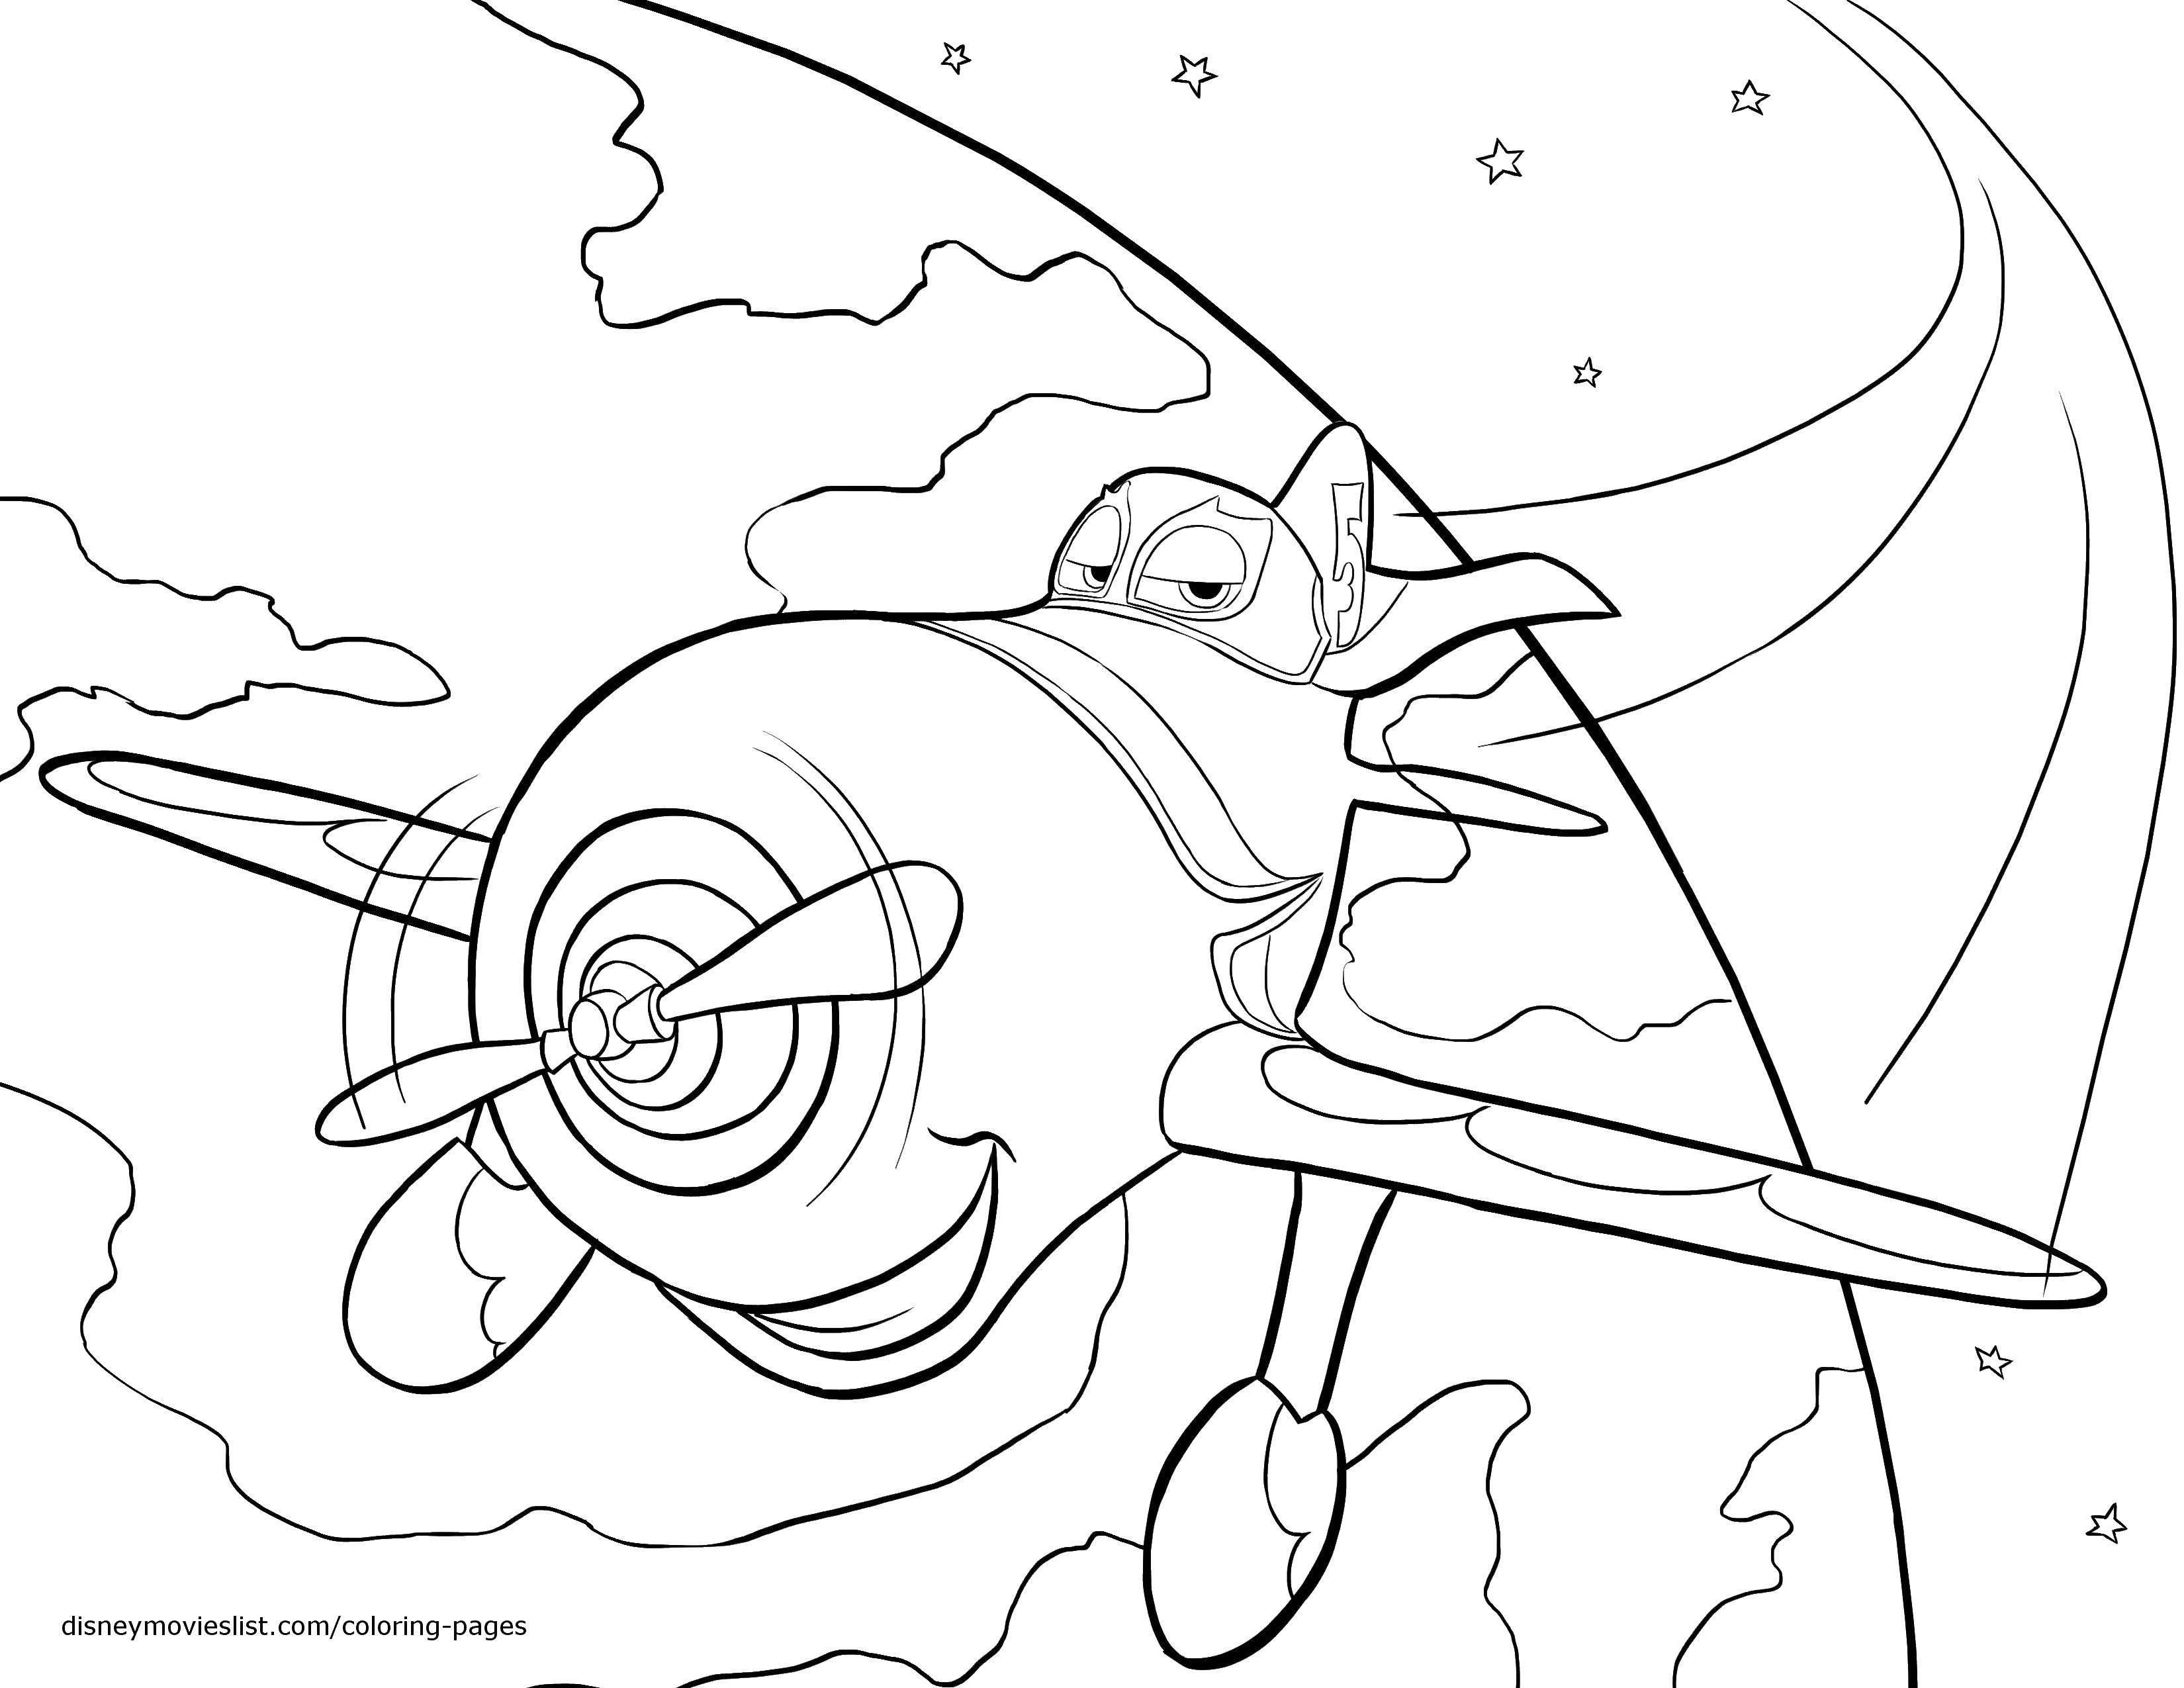 Опис: розмальовки  Літачок з мультфільму тачки. Категорія: Тачки. Теги:  мультфільми, Тачки, машини, літачок.